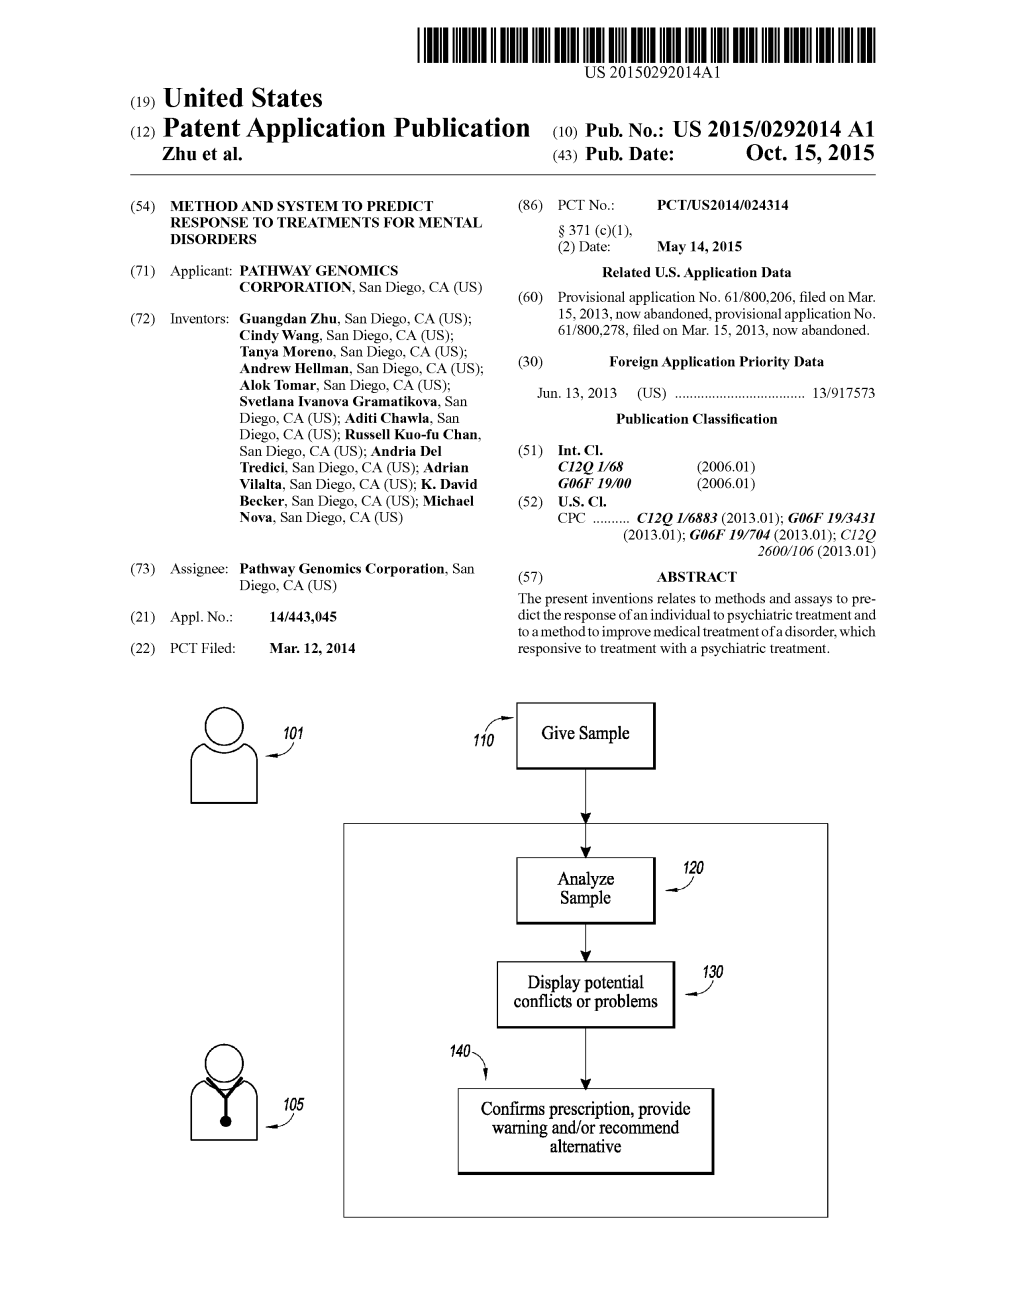 (12) Patent Application Publication (10) Pub. No.: US 2015/0292014 A1 Zhu Et Al